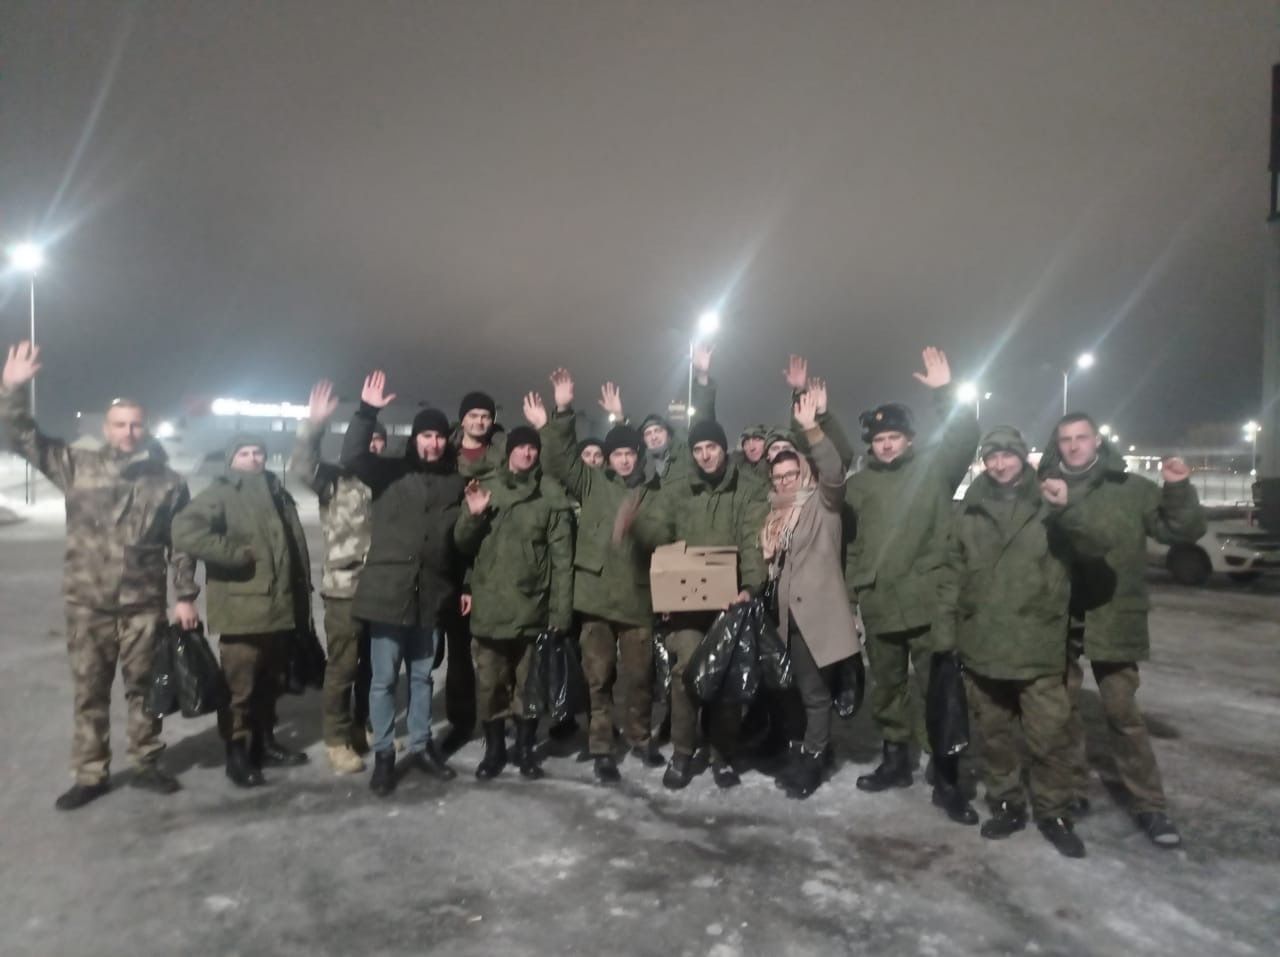 Представители сельхозтехникума посетили тетюшан, призванных в рамках частичной мобилизации в «Казань ЭКСПО»